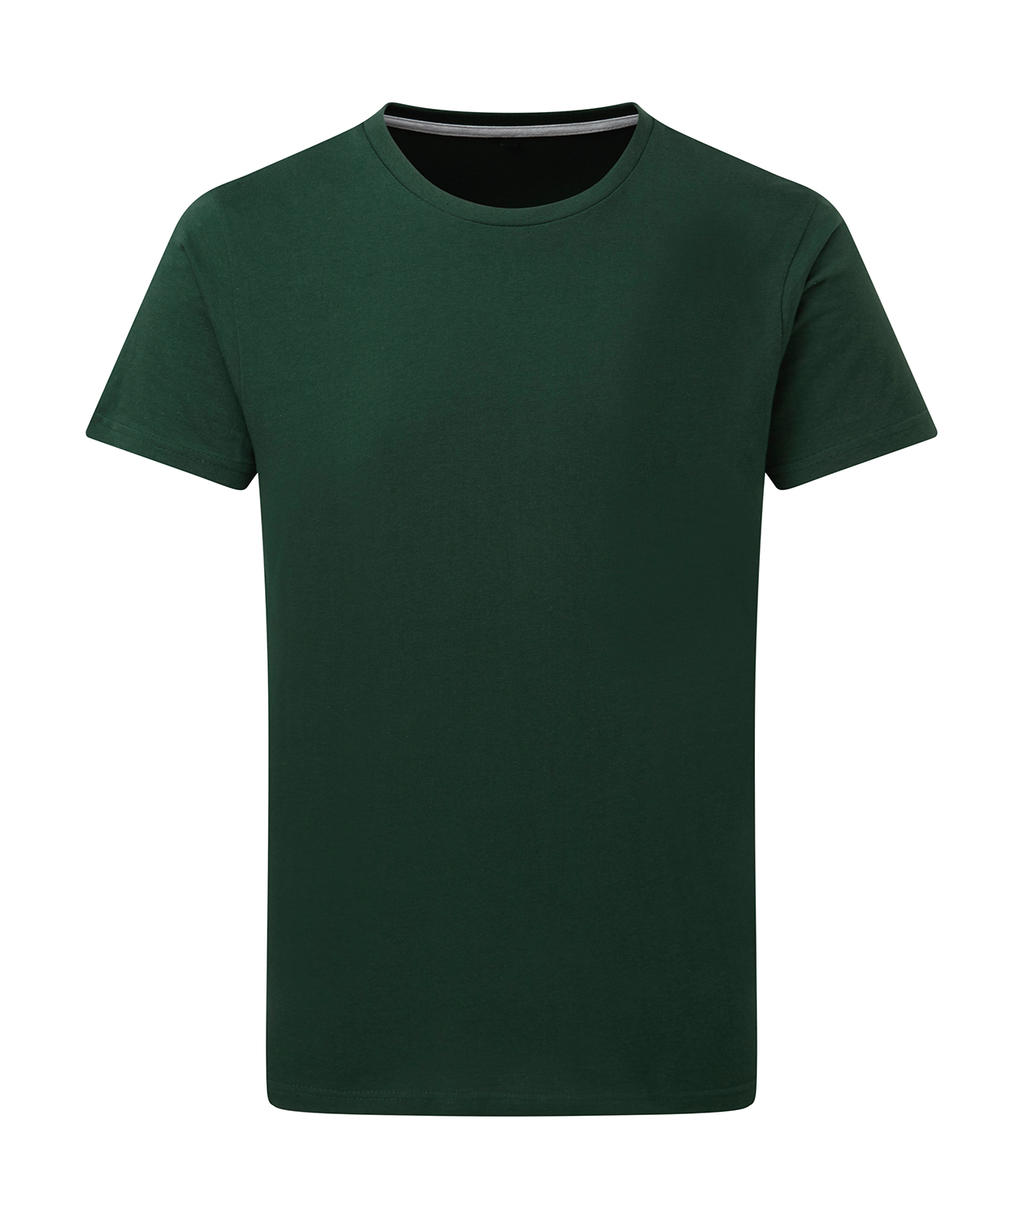 Dokonale potlačiteľné tričko bez štítku - bottle green